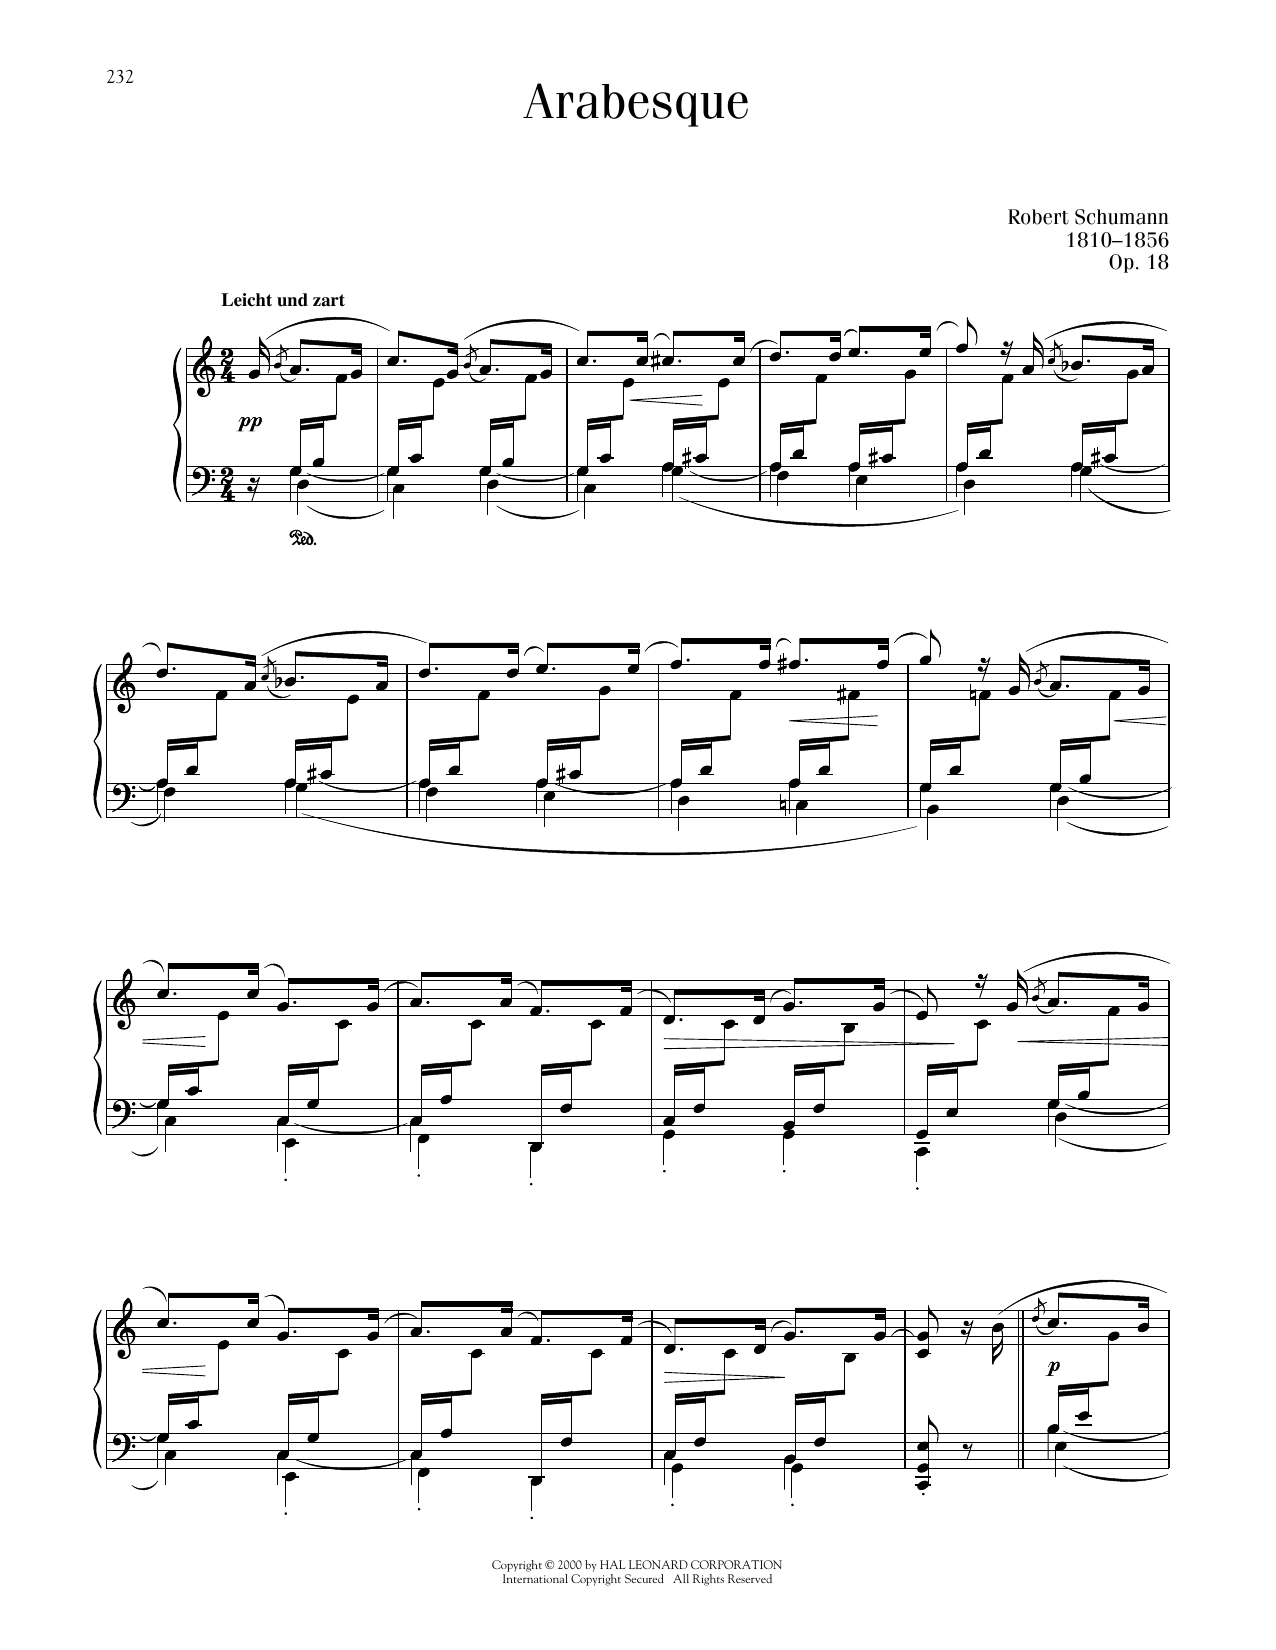 Robert Schumann Arabesque, Op. 18 sheet music notes printable PDF score